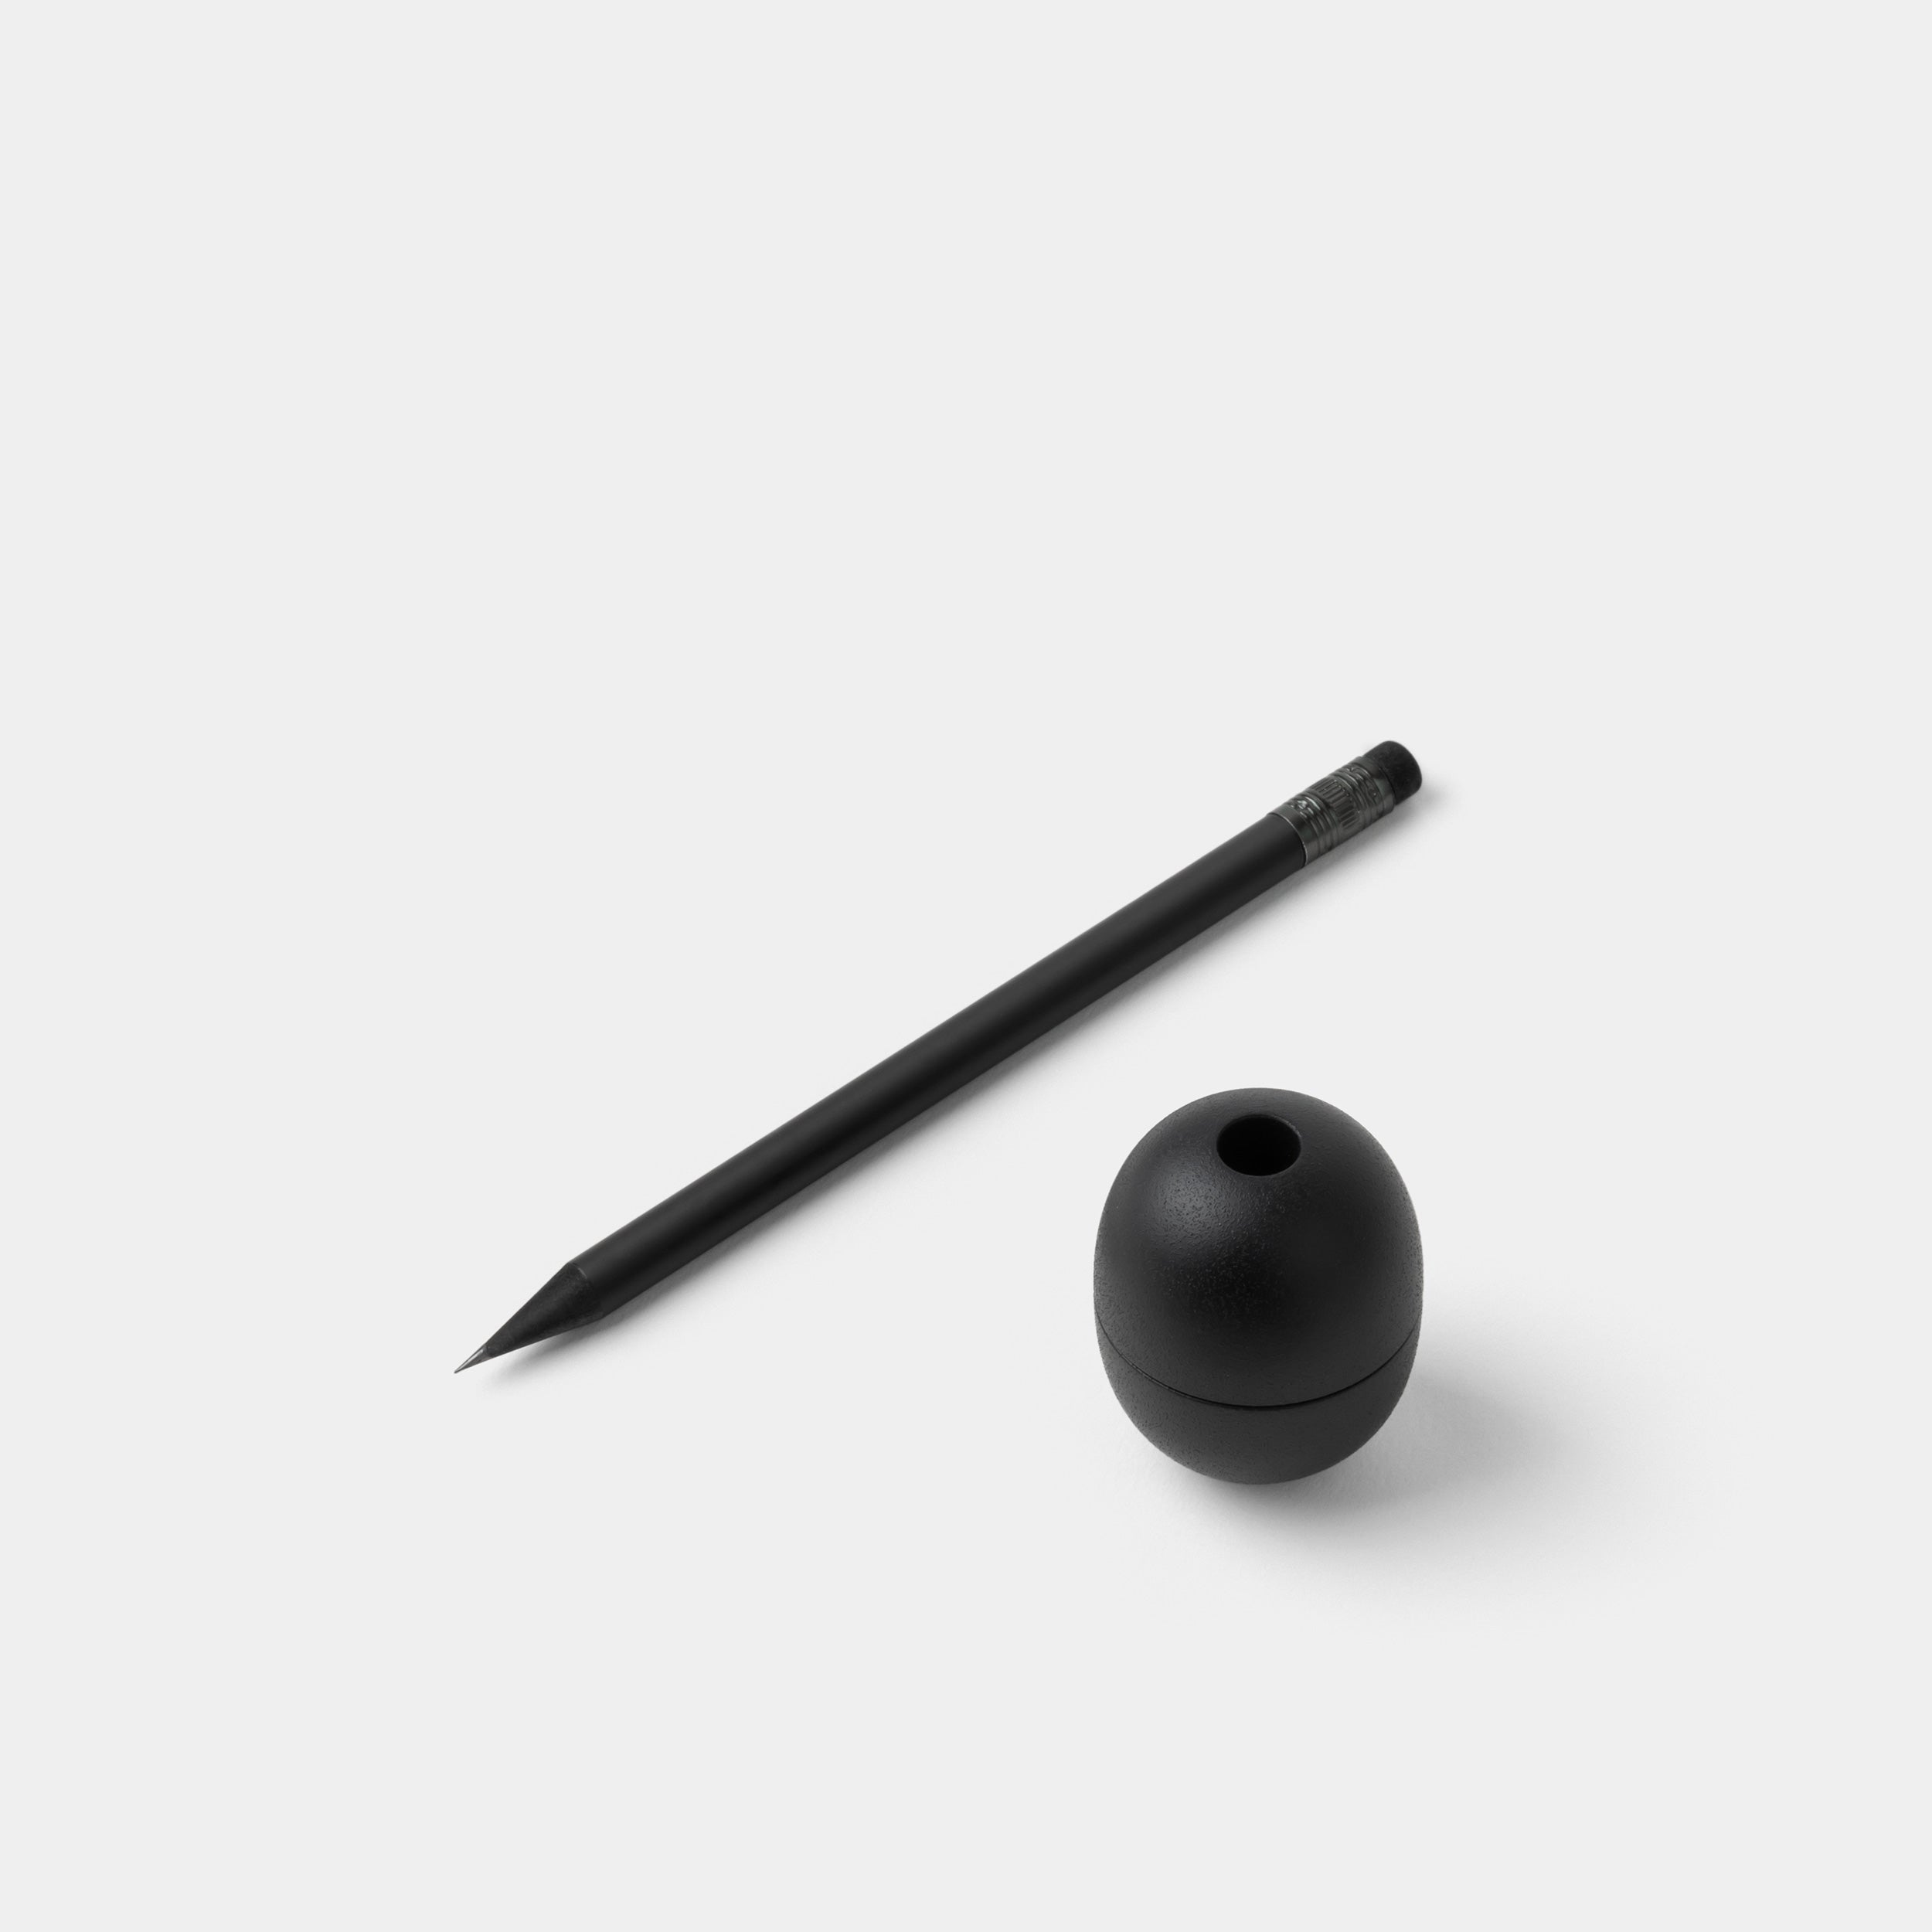 No.30 Pencil Sharpener with black pencil